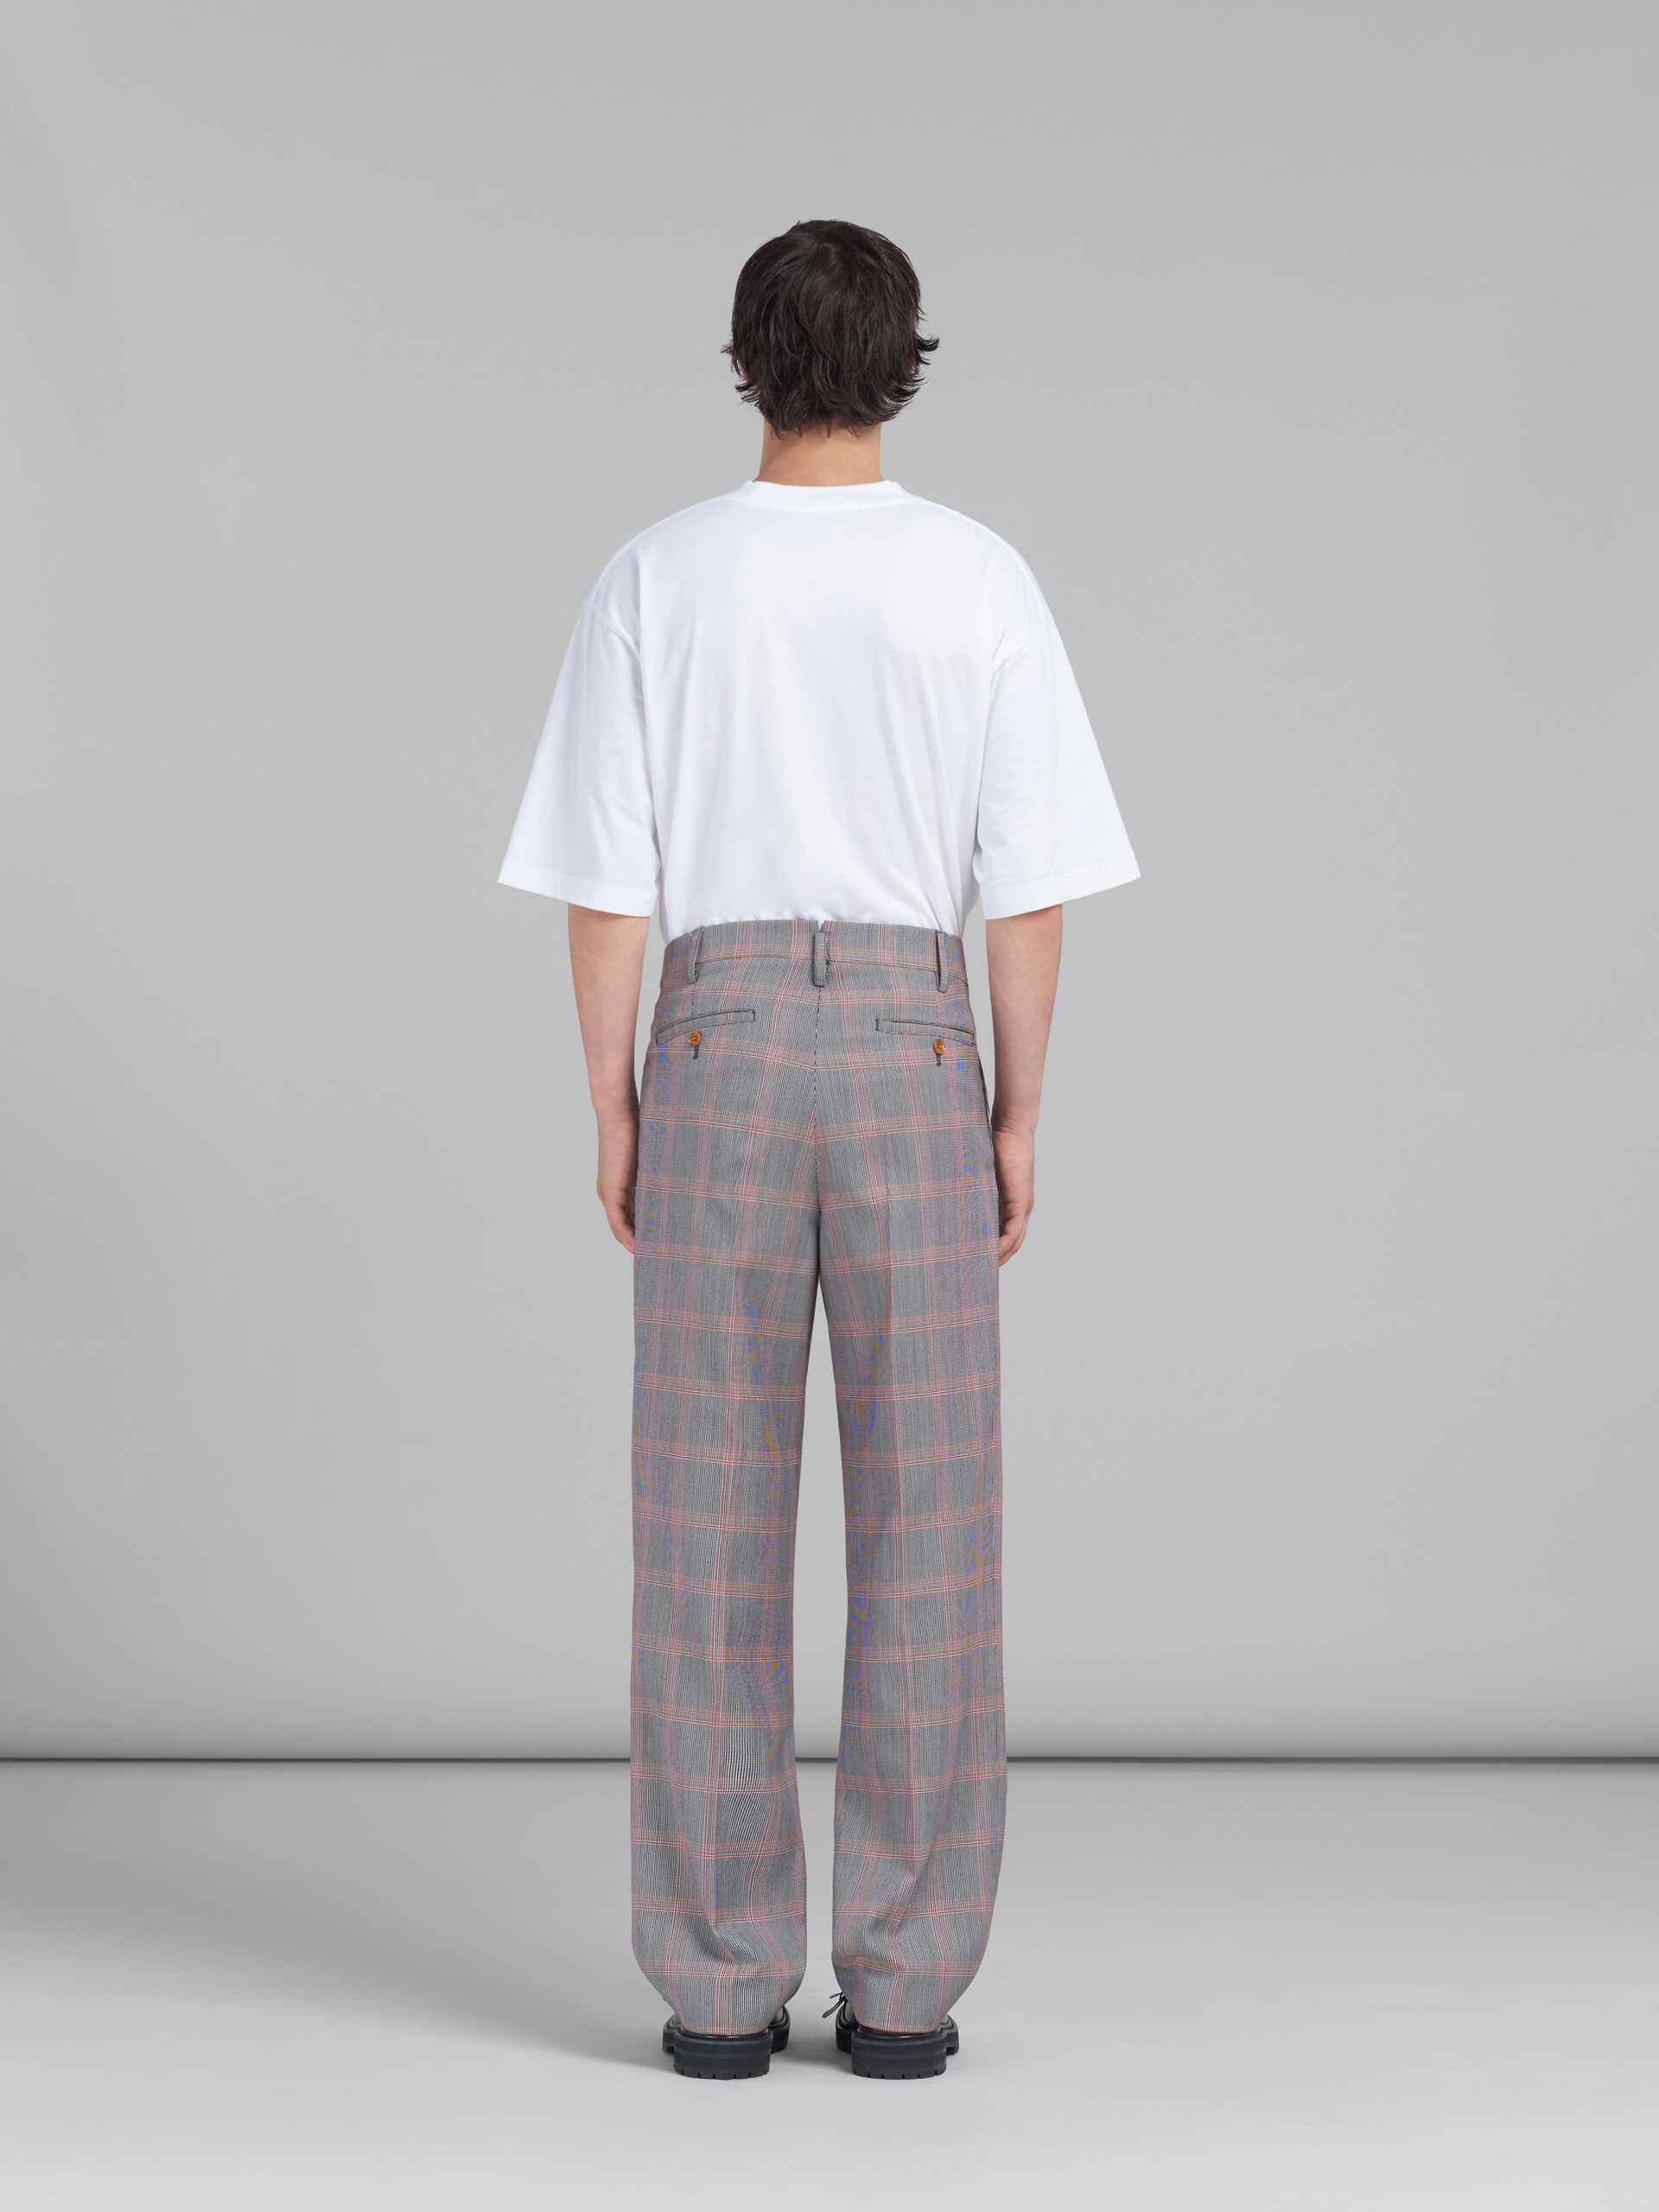 Pantalón chino naranja de lana técnica a cuadros - Pantalones - Image 3